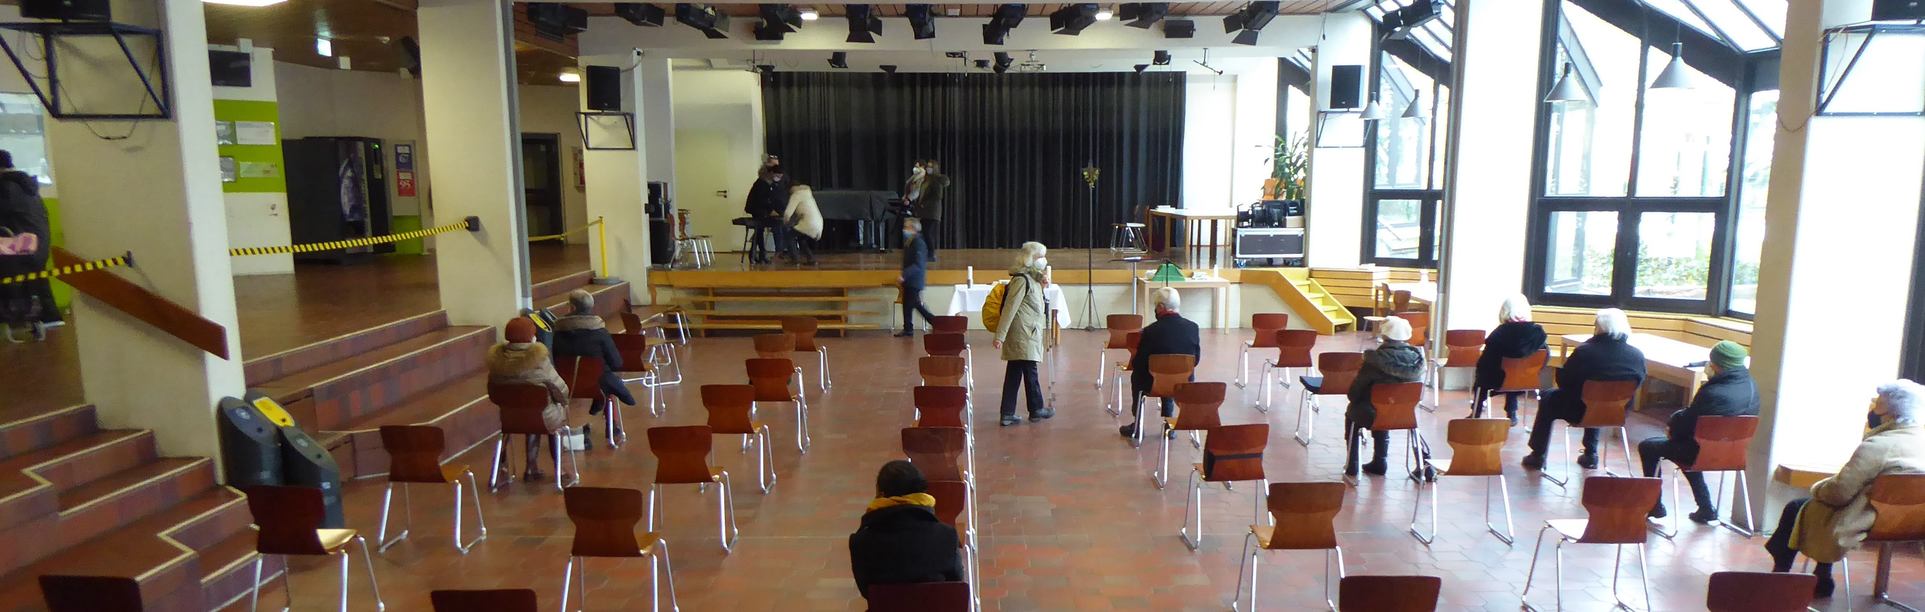 Die helle Pausenhalle der St.Lioba-Schule bietet viel Platz (c) Brigitta Gebauer 2021